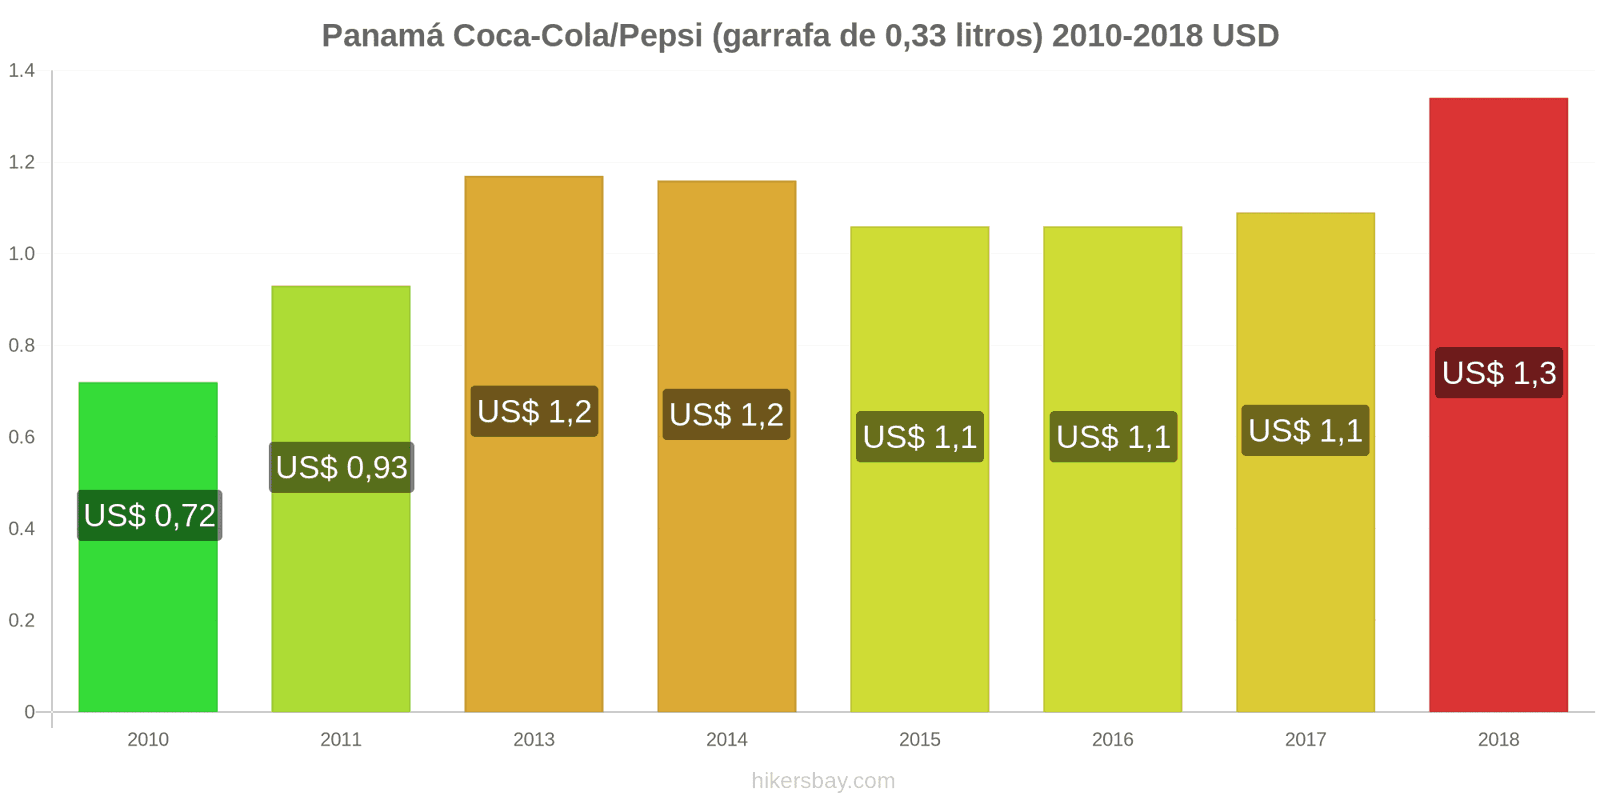 Panamá mudanças de preços Coca-Cola/Pepsi (garrafa de 0.33 litros) hikersbay.com